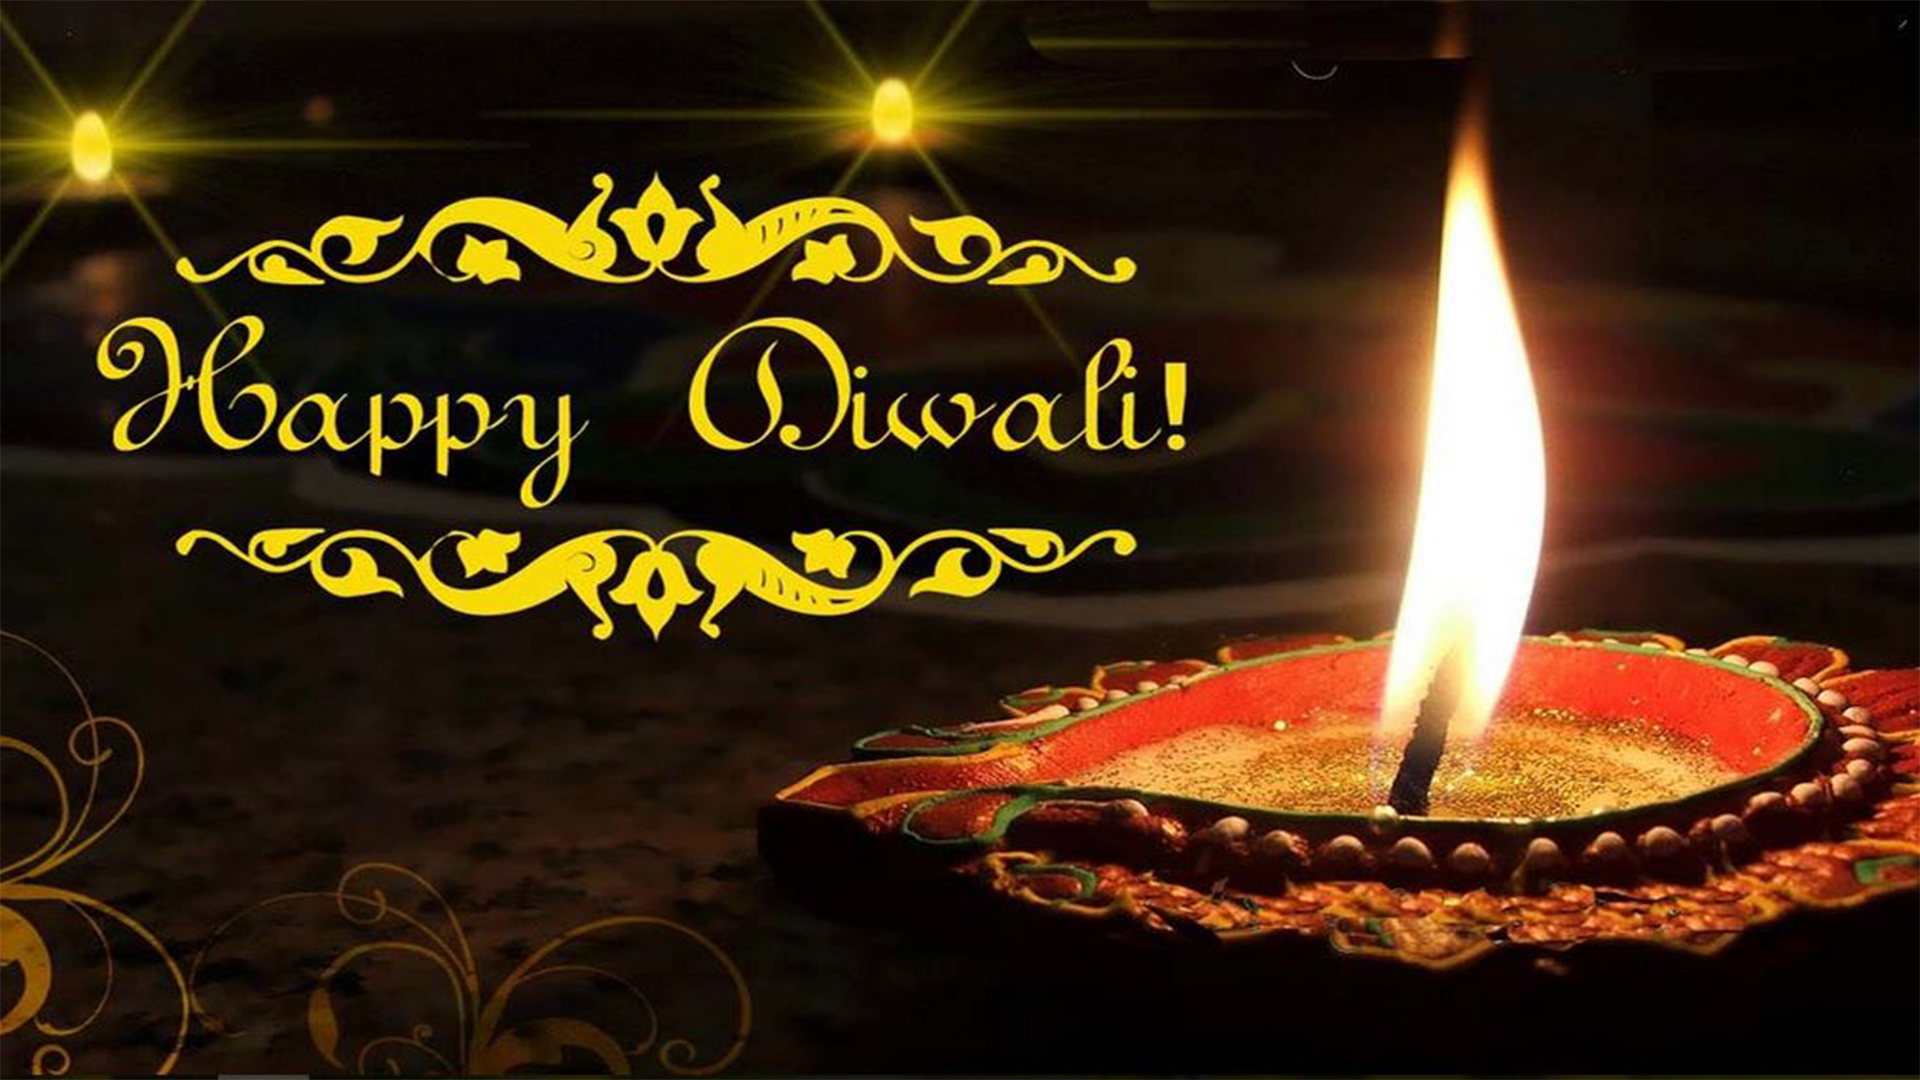 happy diwali wishes image